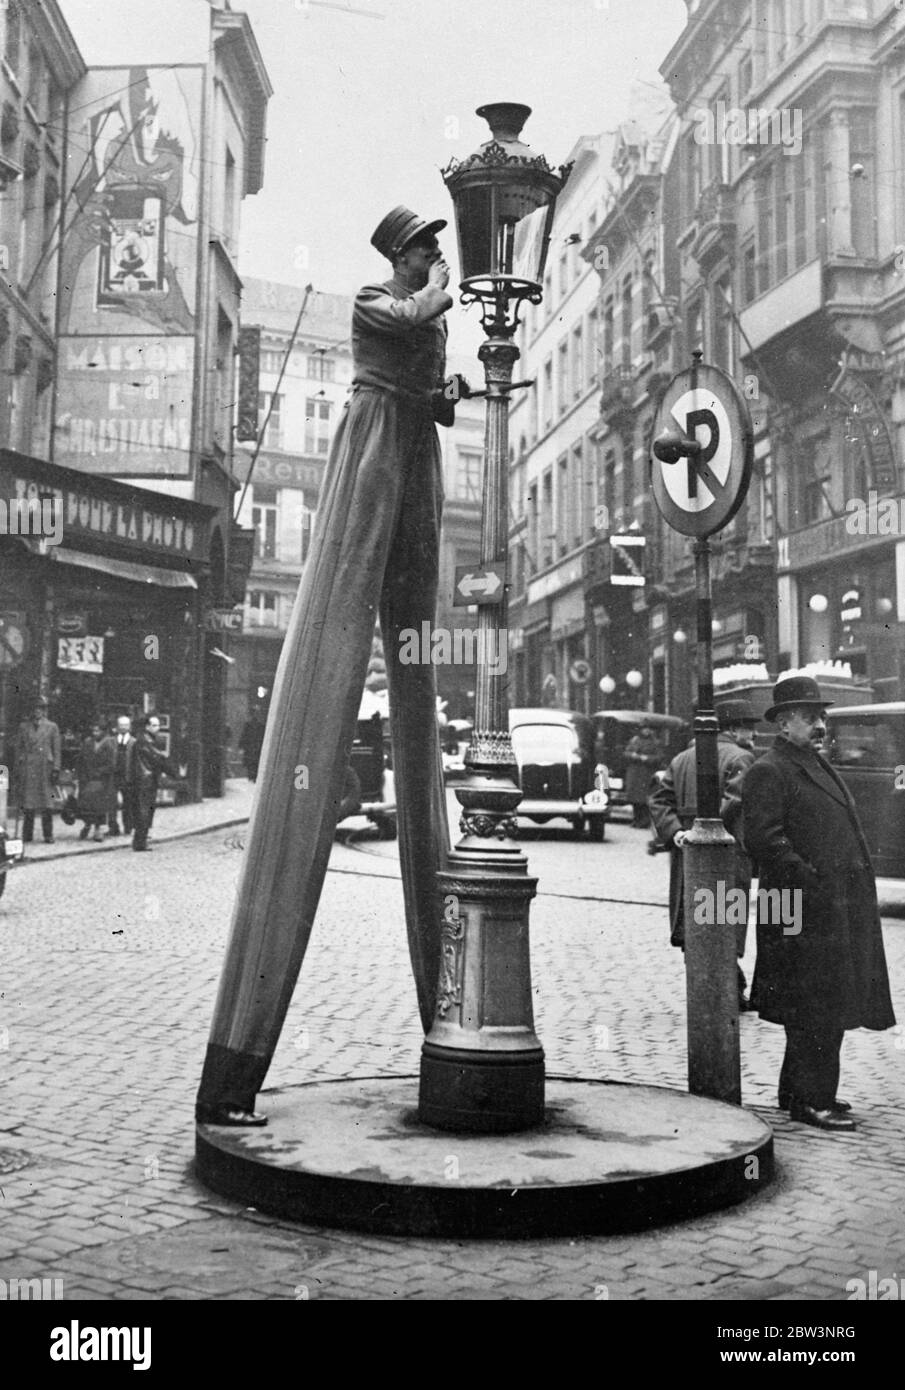 Er strebt nach großen Höhen. Ein Bürger von Brüssel, der darauf besteht, auf seine Mitmenschen zu blicken. 13 Dezember 1935 Stockfoto